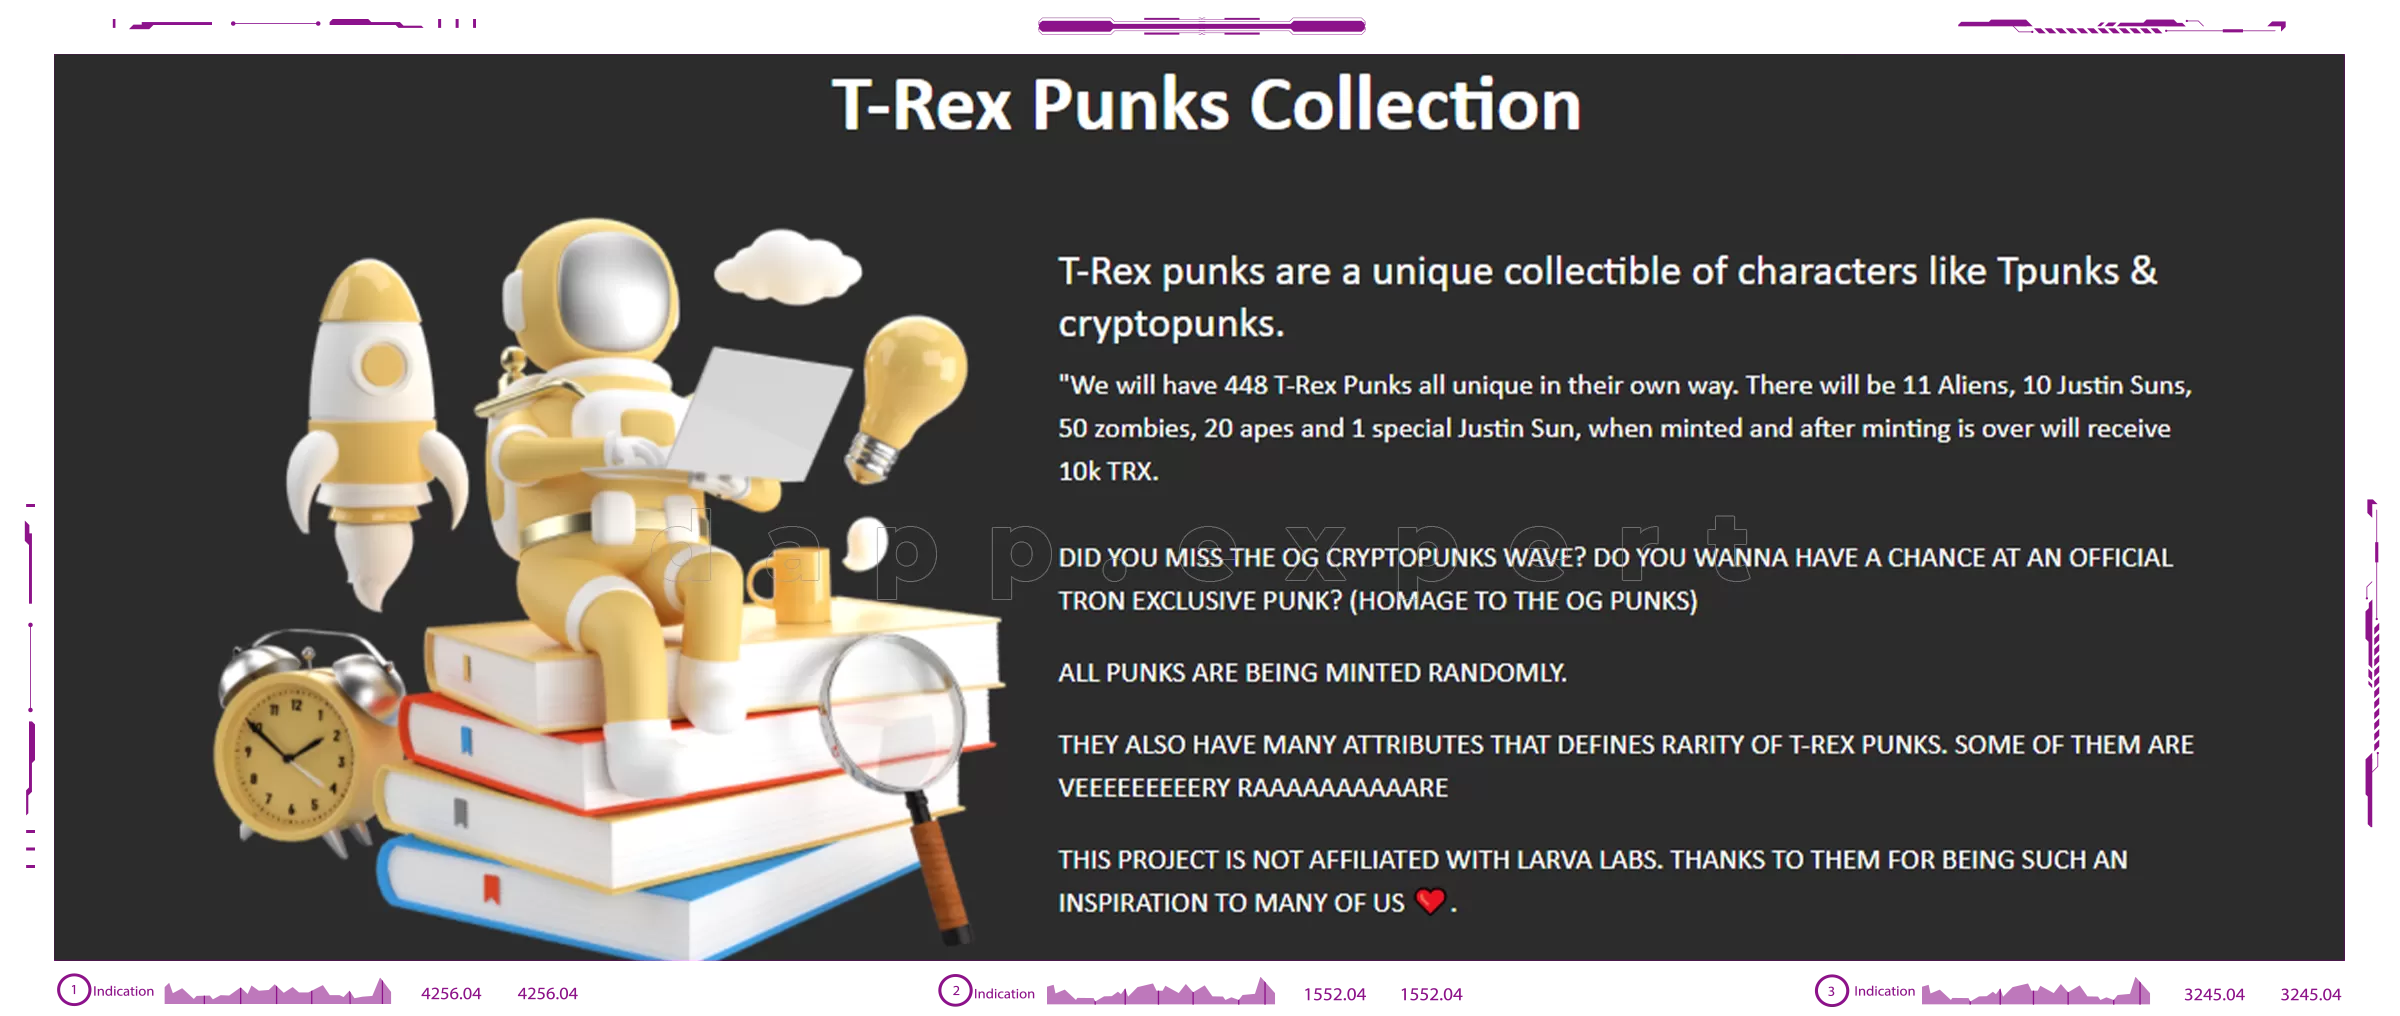 T-Rex Punks dapps